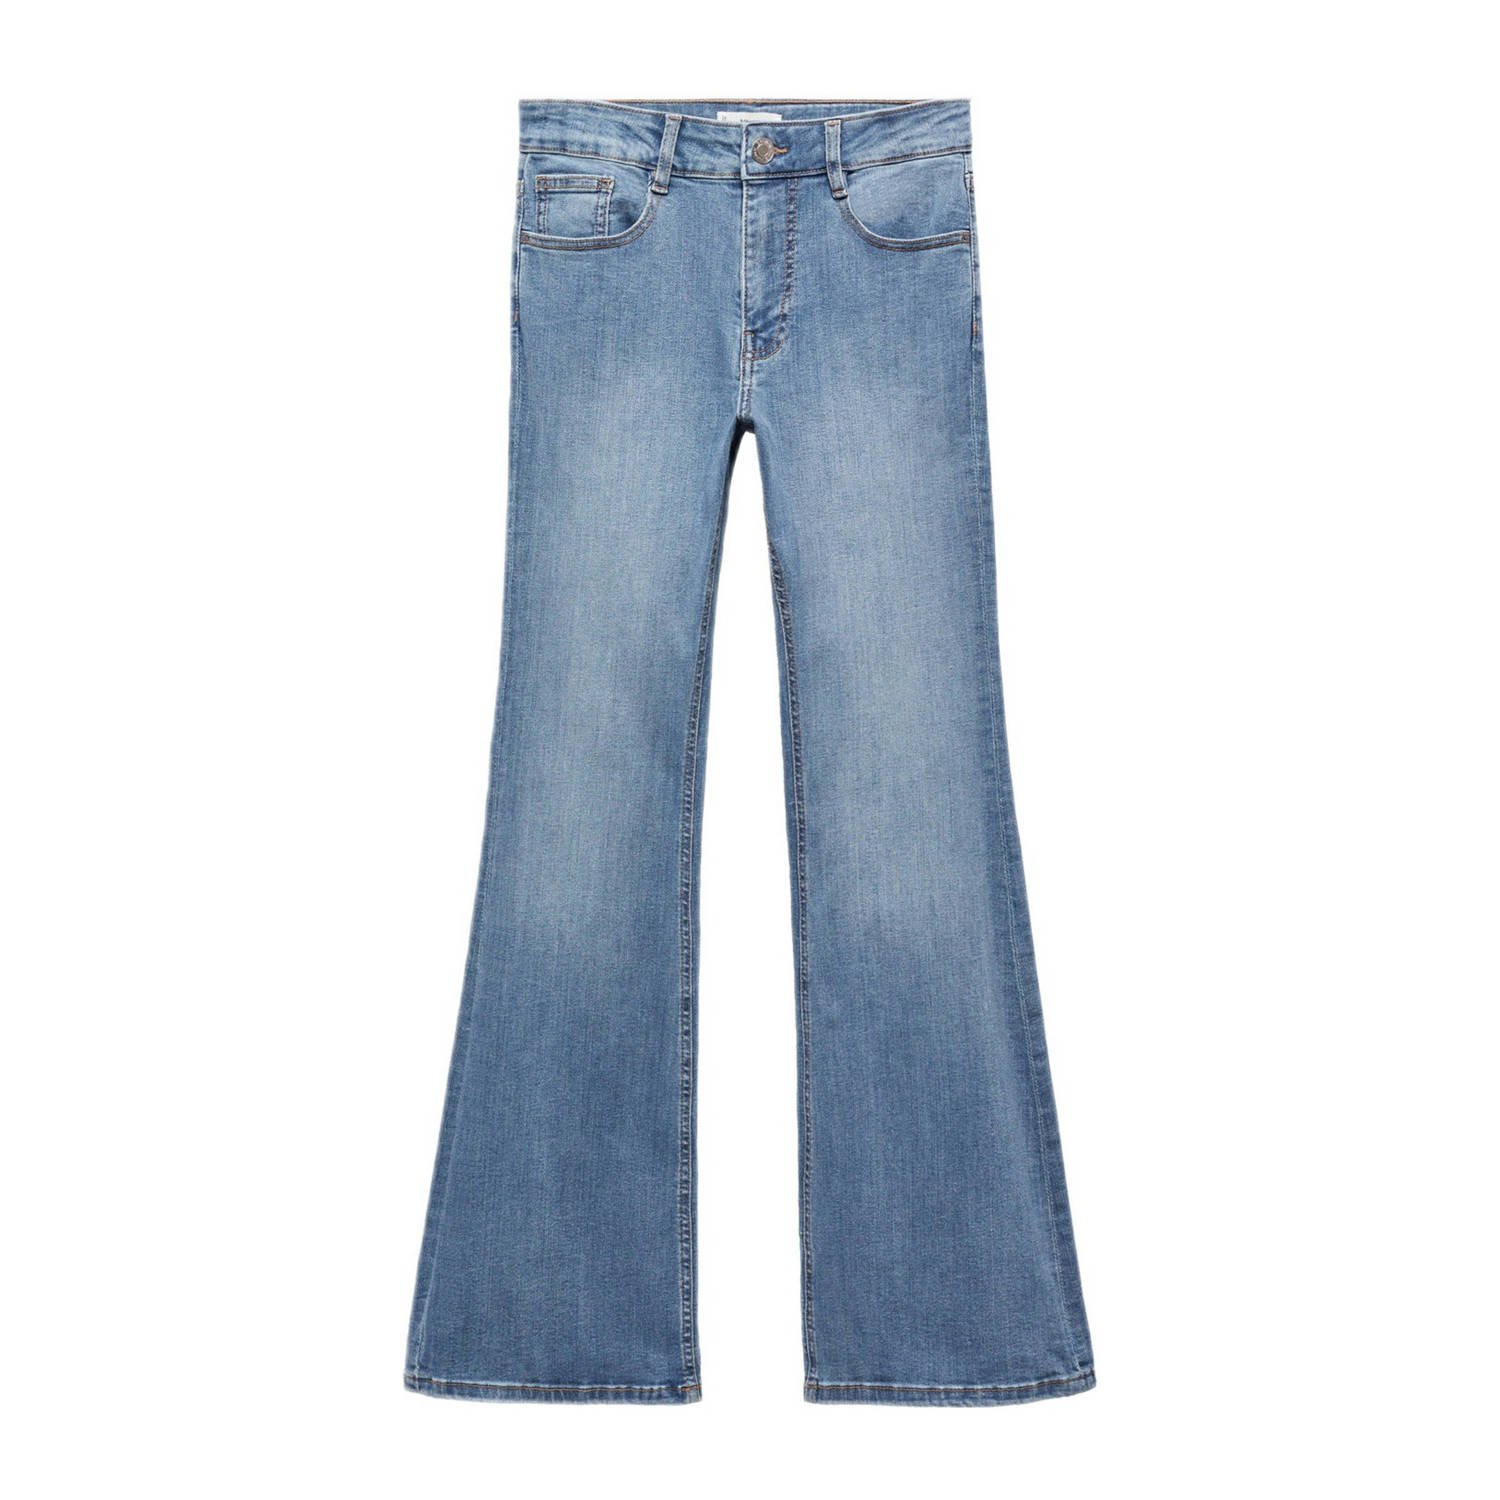 Mango Kids flared jeans changeant blauw Meisjes Stretchdenim Effen 168(M)